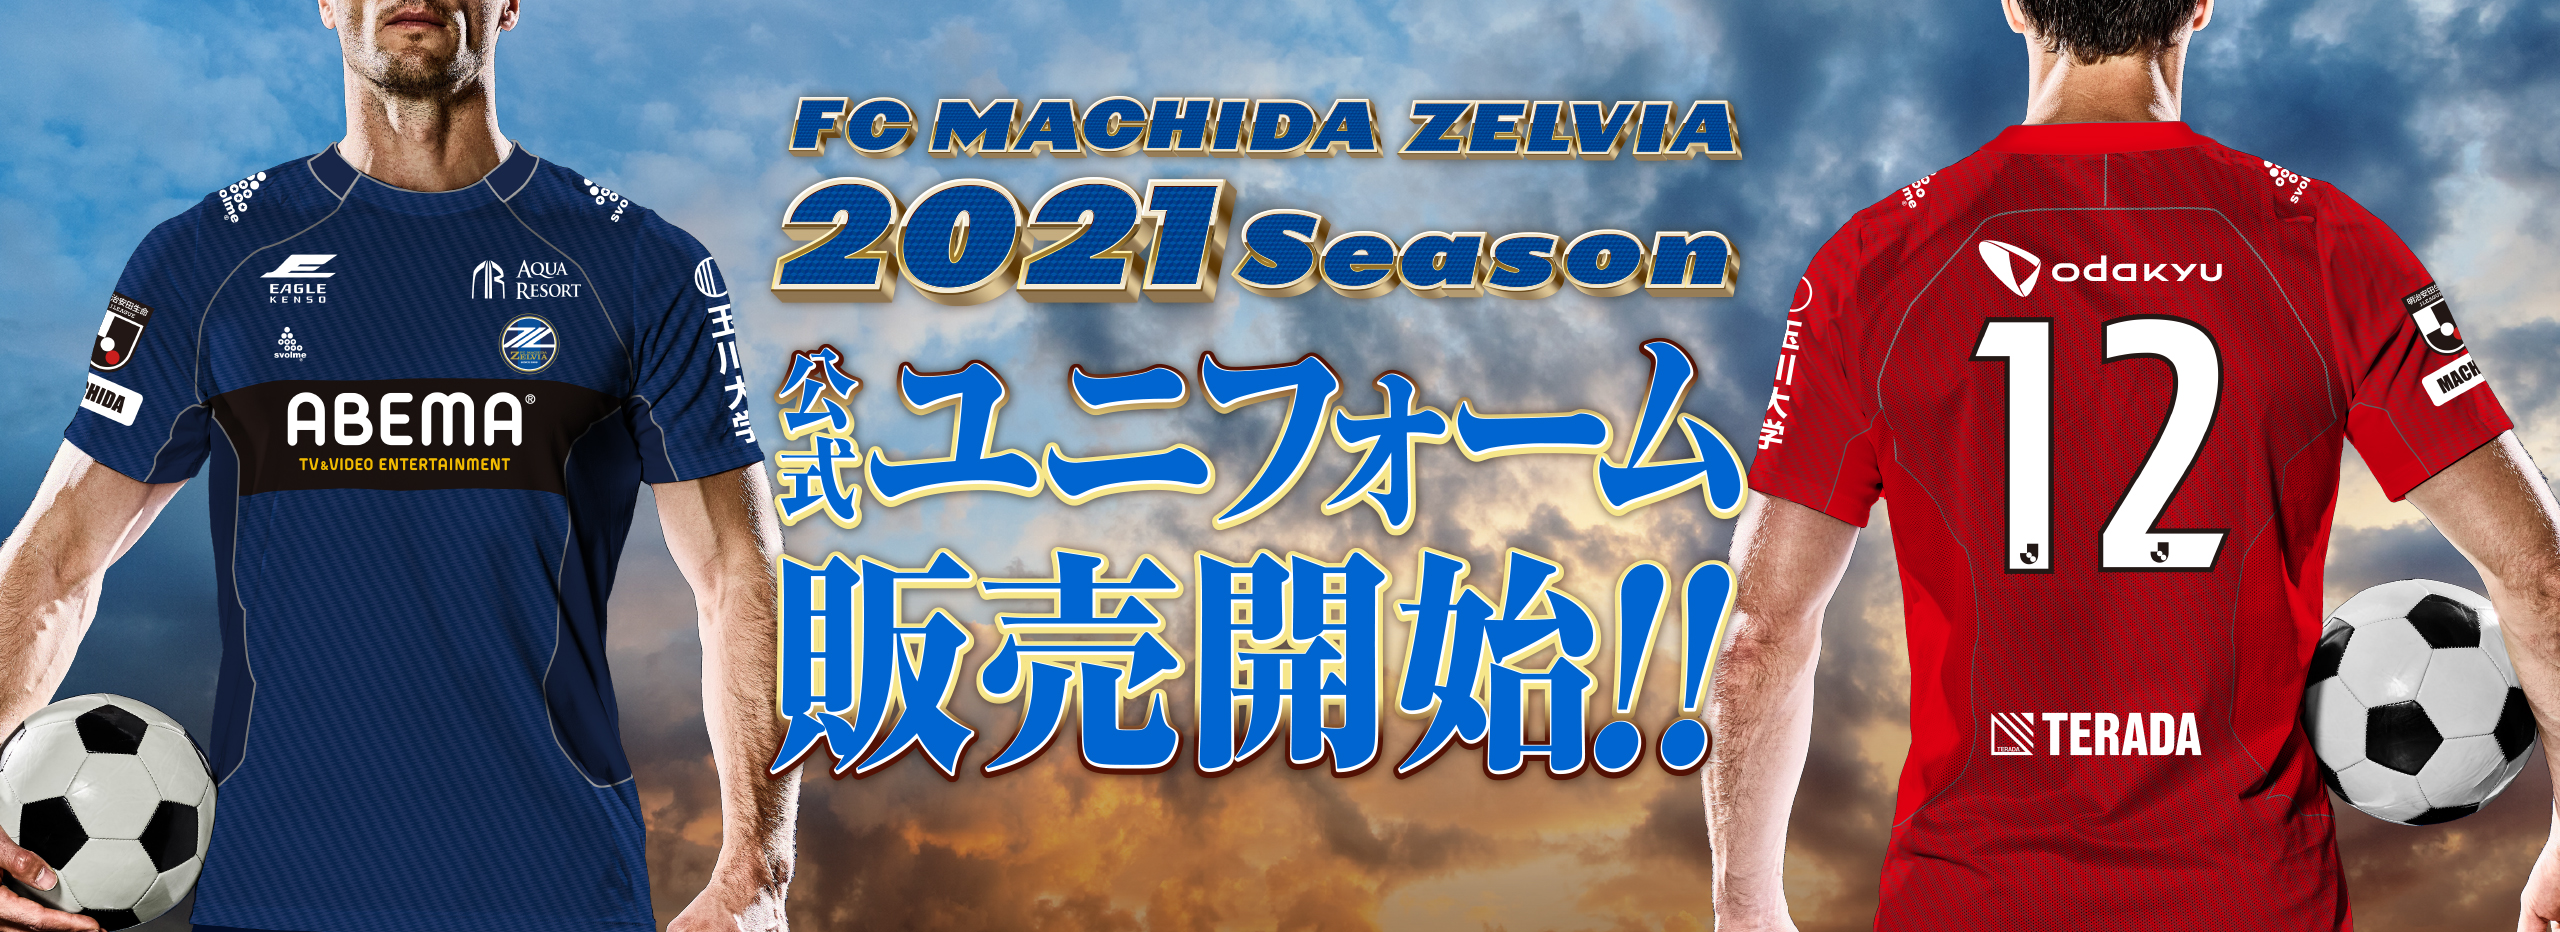 21シーズン公式ユニフォーム 販売について Fc町田ゼルビア オフィシャルサイト